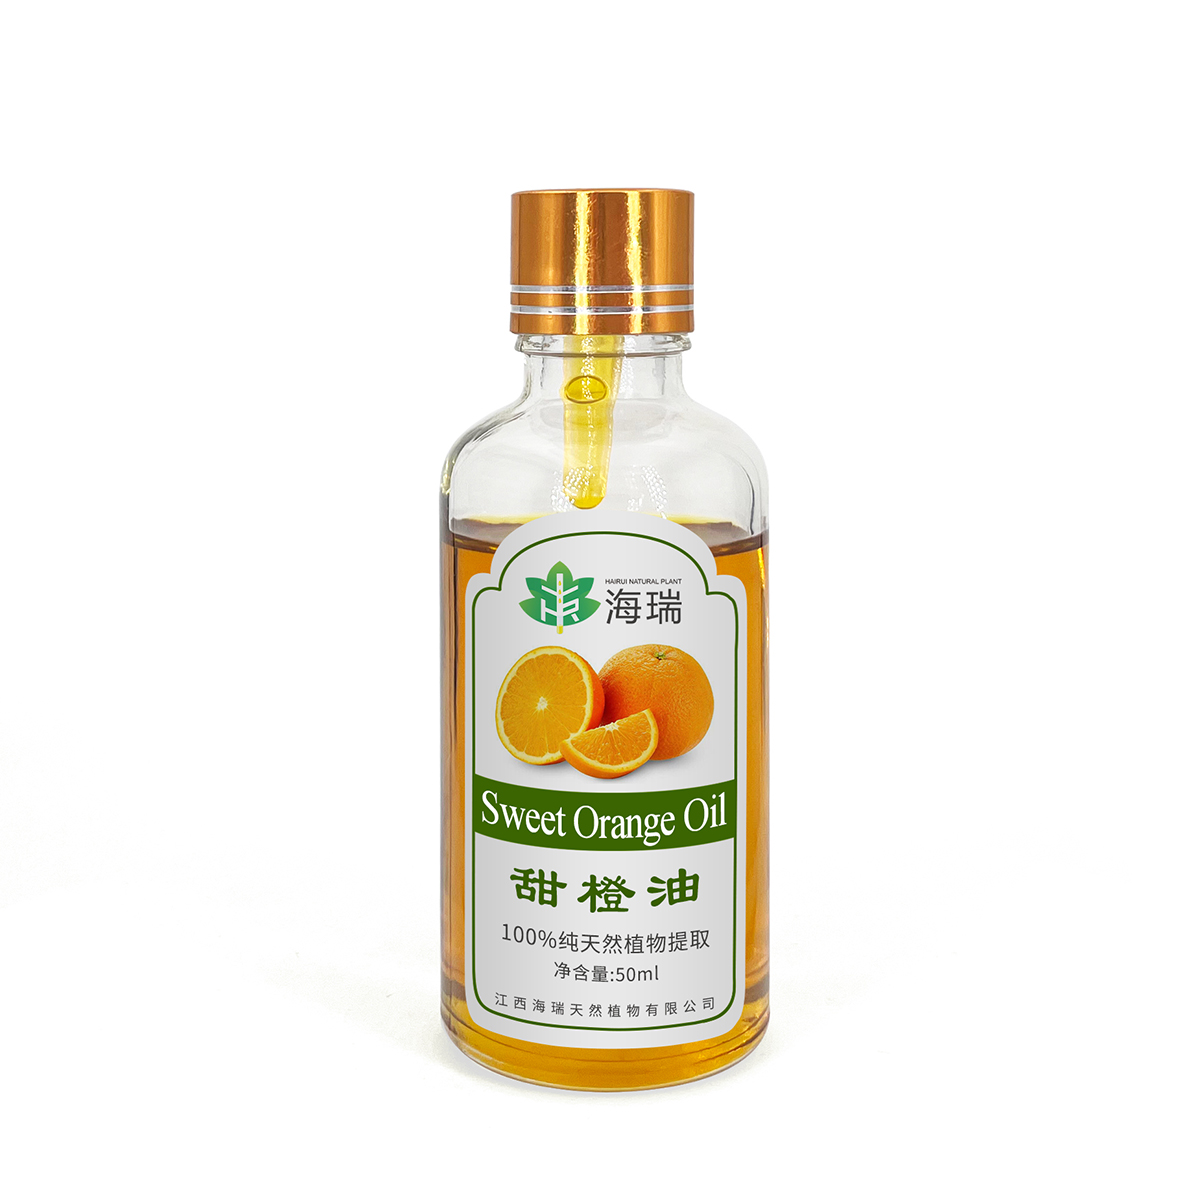 Orgaaniline magusa apelsini eeterlik õli usaldusväärselt Hiina tarnijalt